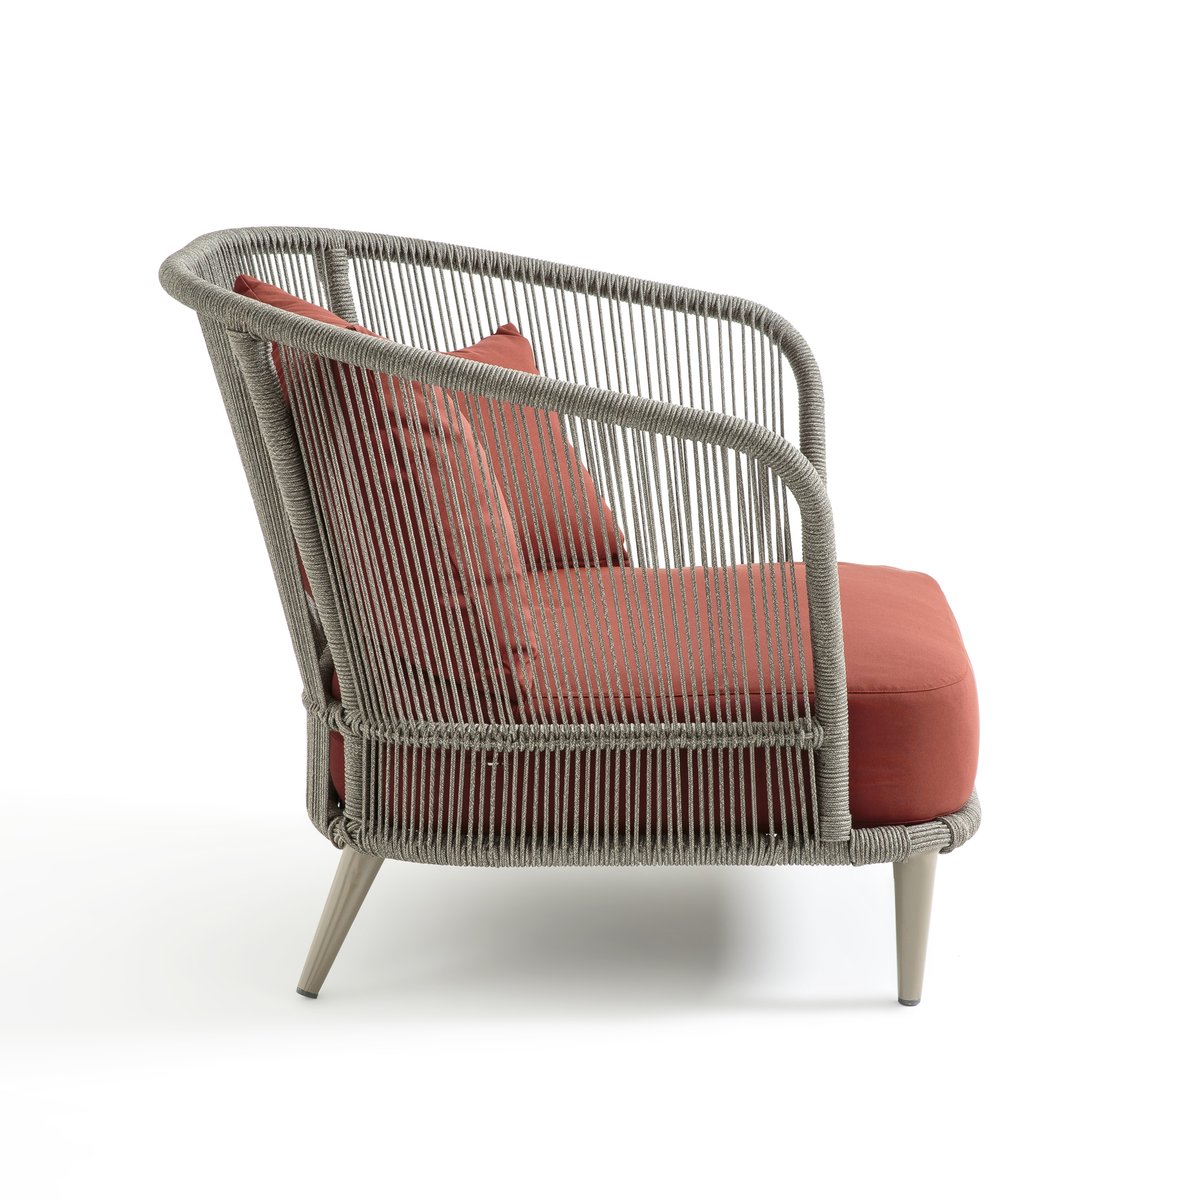 Кресло La Redoute Для сада дизайн Э Галлины Cestino единый размер каштановый - фото 3